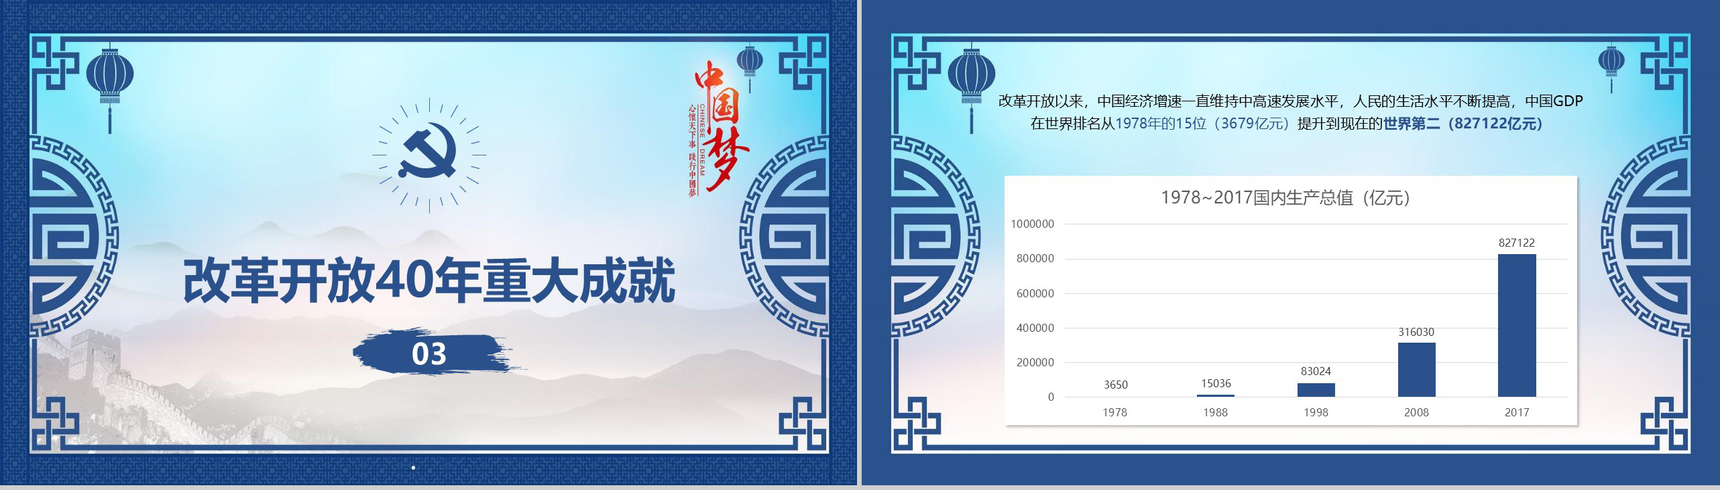 山水画中国梦改革开放40周年改革PPT模板-7